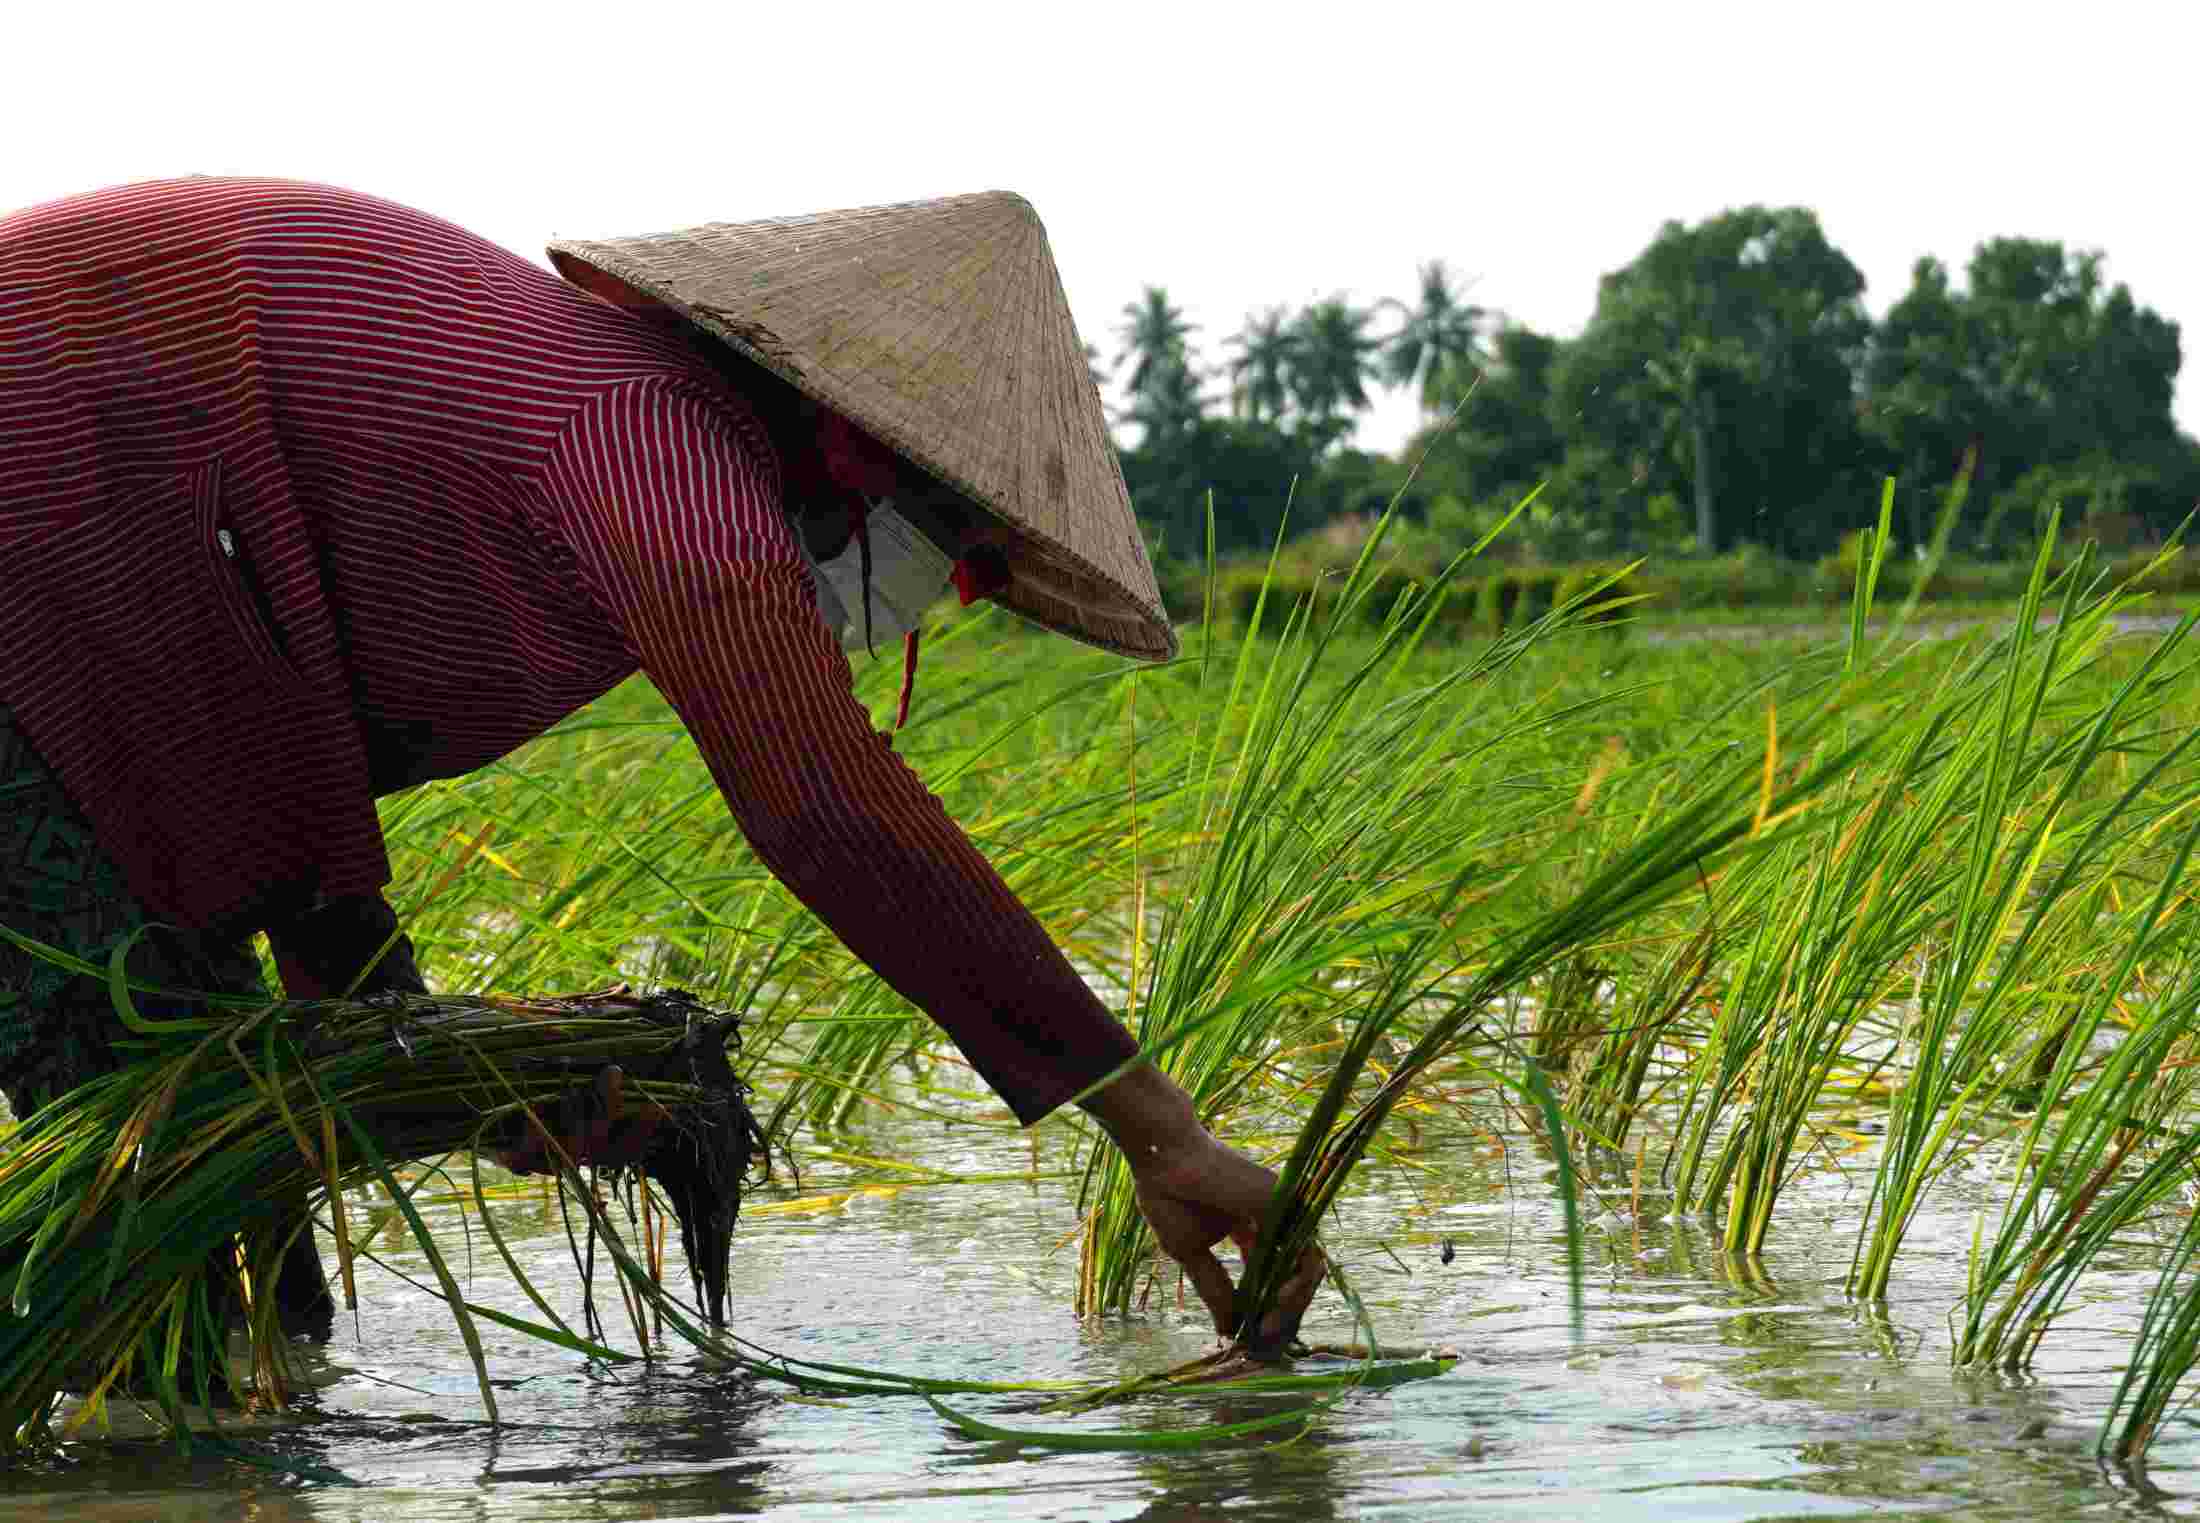 Mùa cấy lúa Tài Nguyên cũng là thời điểm nhiều lao động nông nhàn có việc làm ổn định từ việc nhổ mạ, cấy lúa thuê. Trung bình 1ha, chủ ruộng thuê cả chục nhân công. Tiền công được trả khoảng 900.000 đồng/1.000m2. 